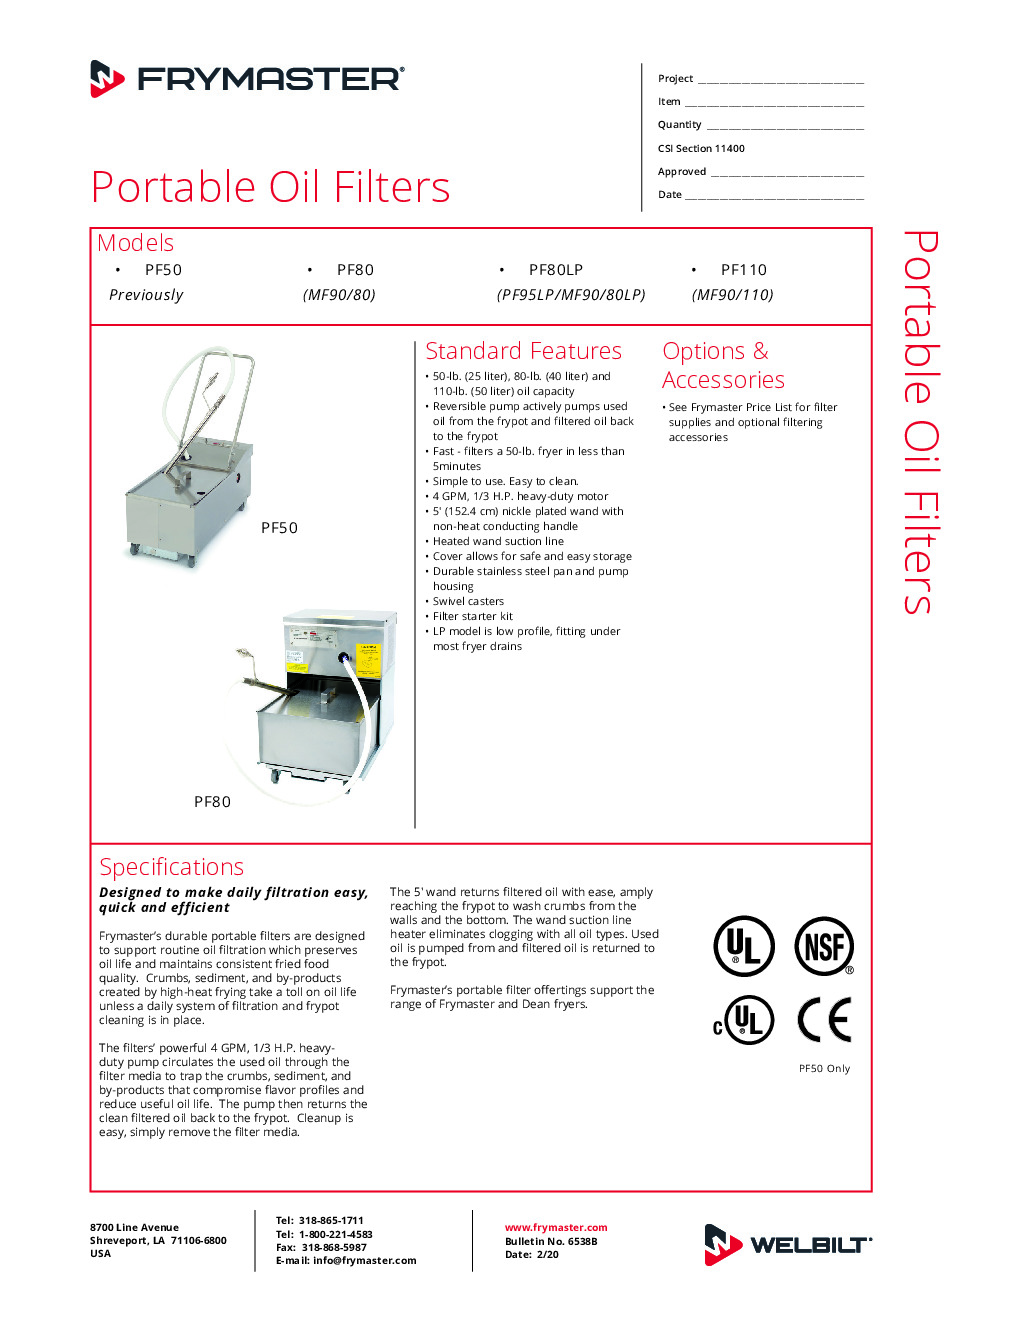 Frymaster PF110S Mobile Fryer Filter w/ 110-Lb Oil Capacity, Gravity Drain, Filter Starter Kit